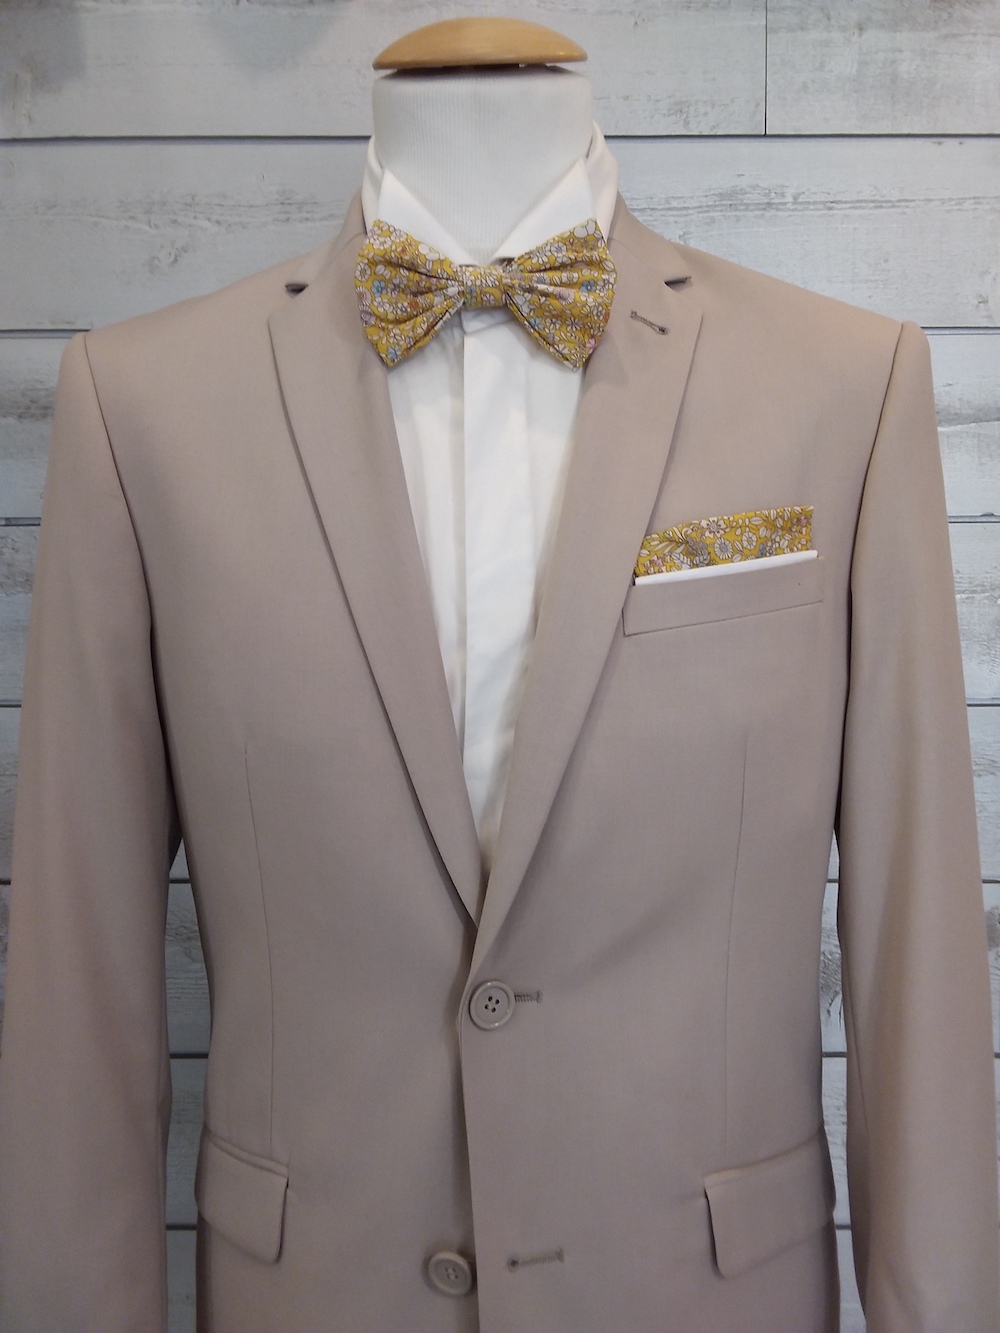 Accessoires Hommes : gilet, cravate, lavallière, noeud papillon, chemise